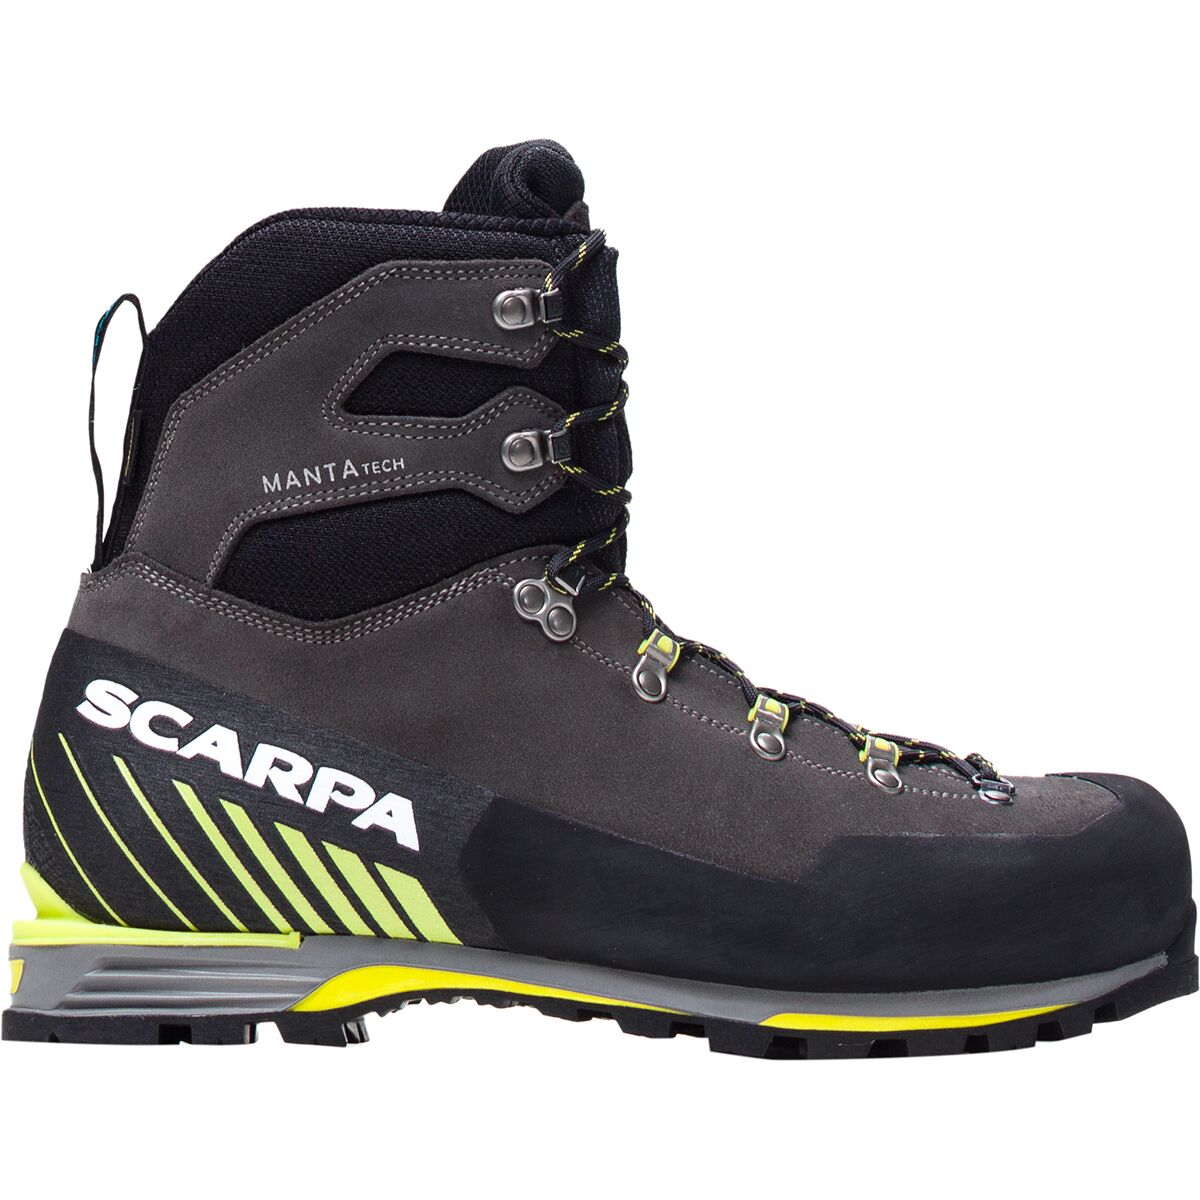 Scarpa Manta Tech GTX Mountaineering Boot - Men's